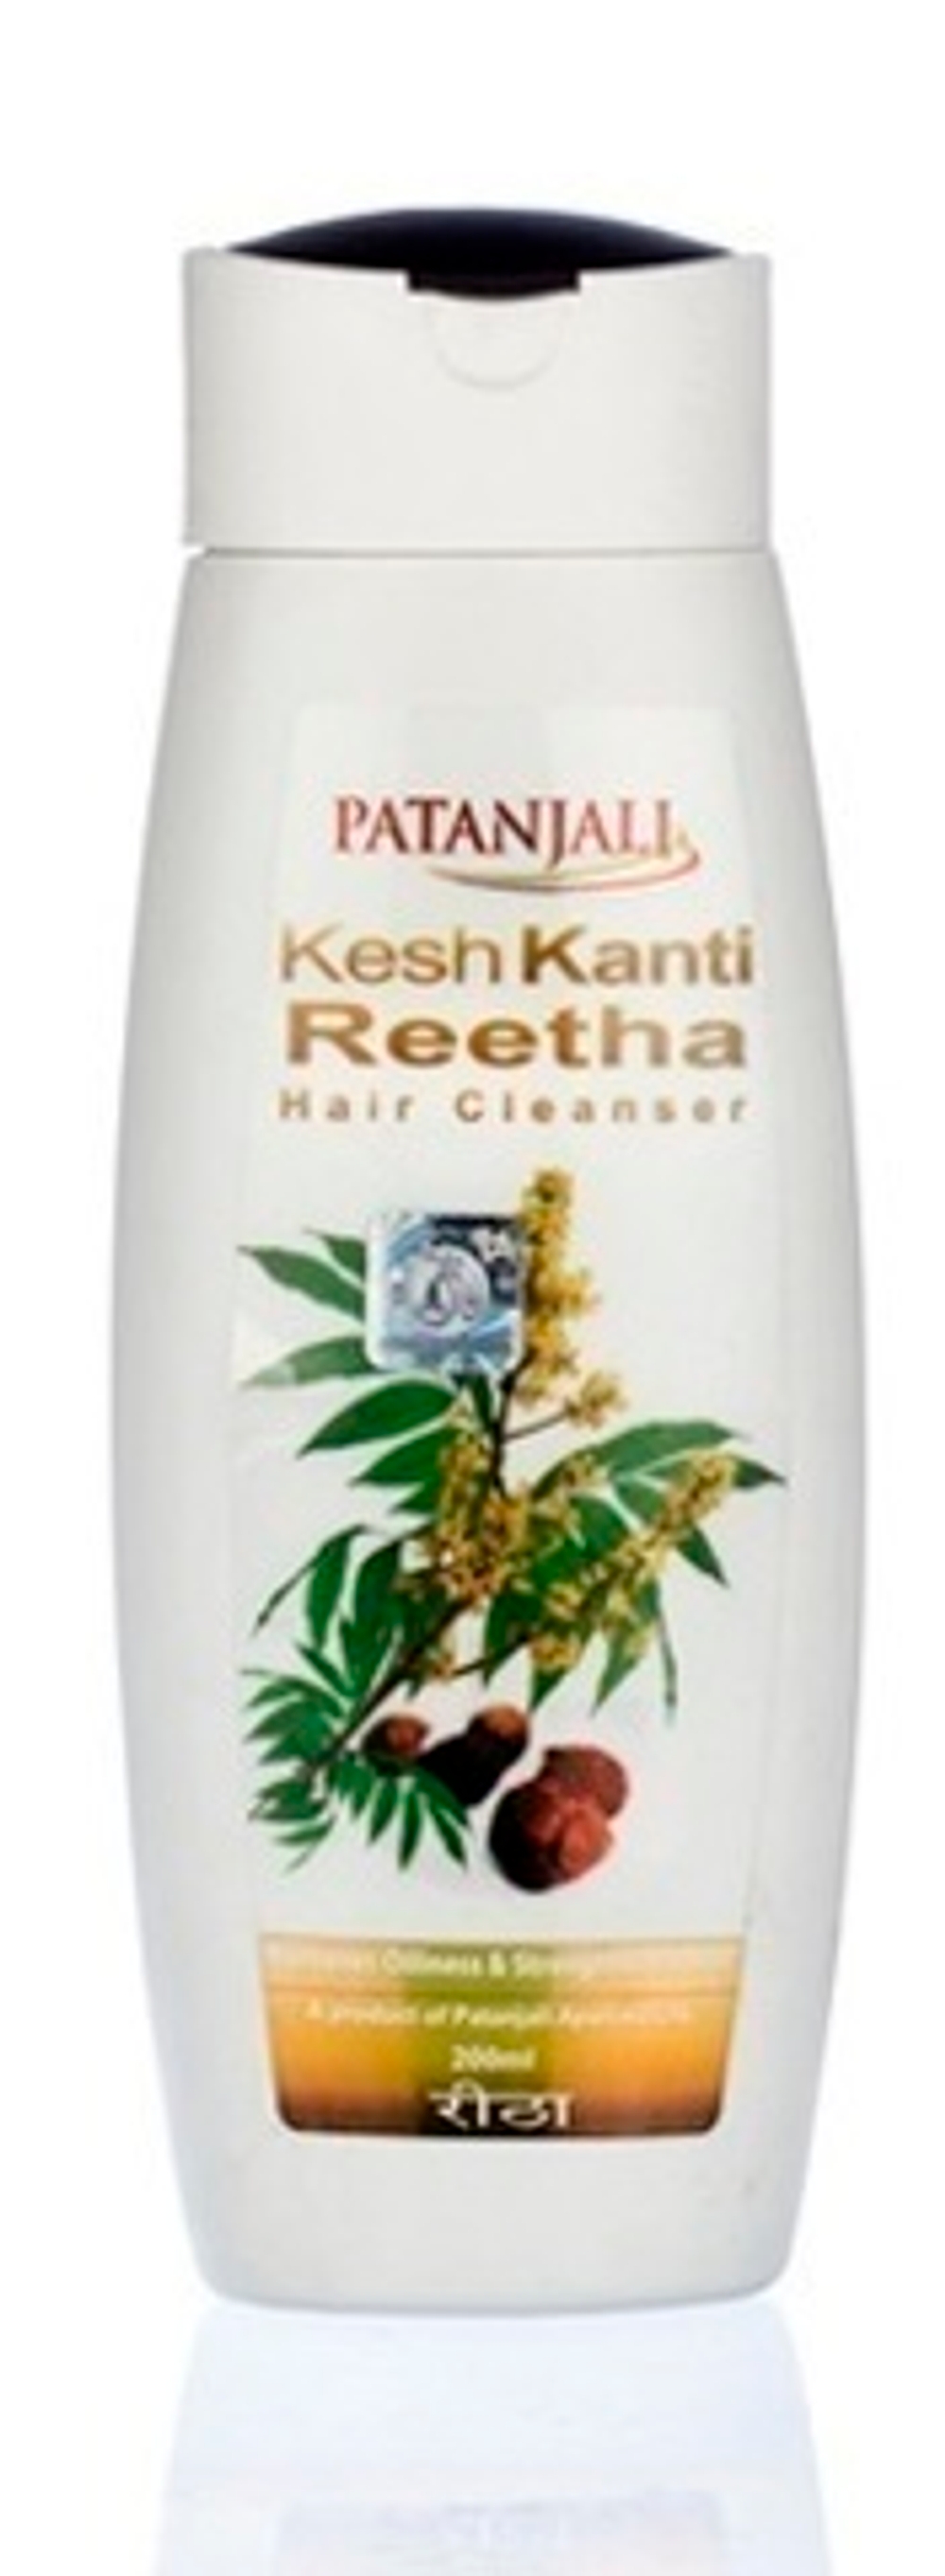 Шампунь Patanjali Kesh Kanti Reetha, укрепление и предотвращение выпадения волос, для всех типов, 8 мл.